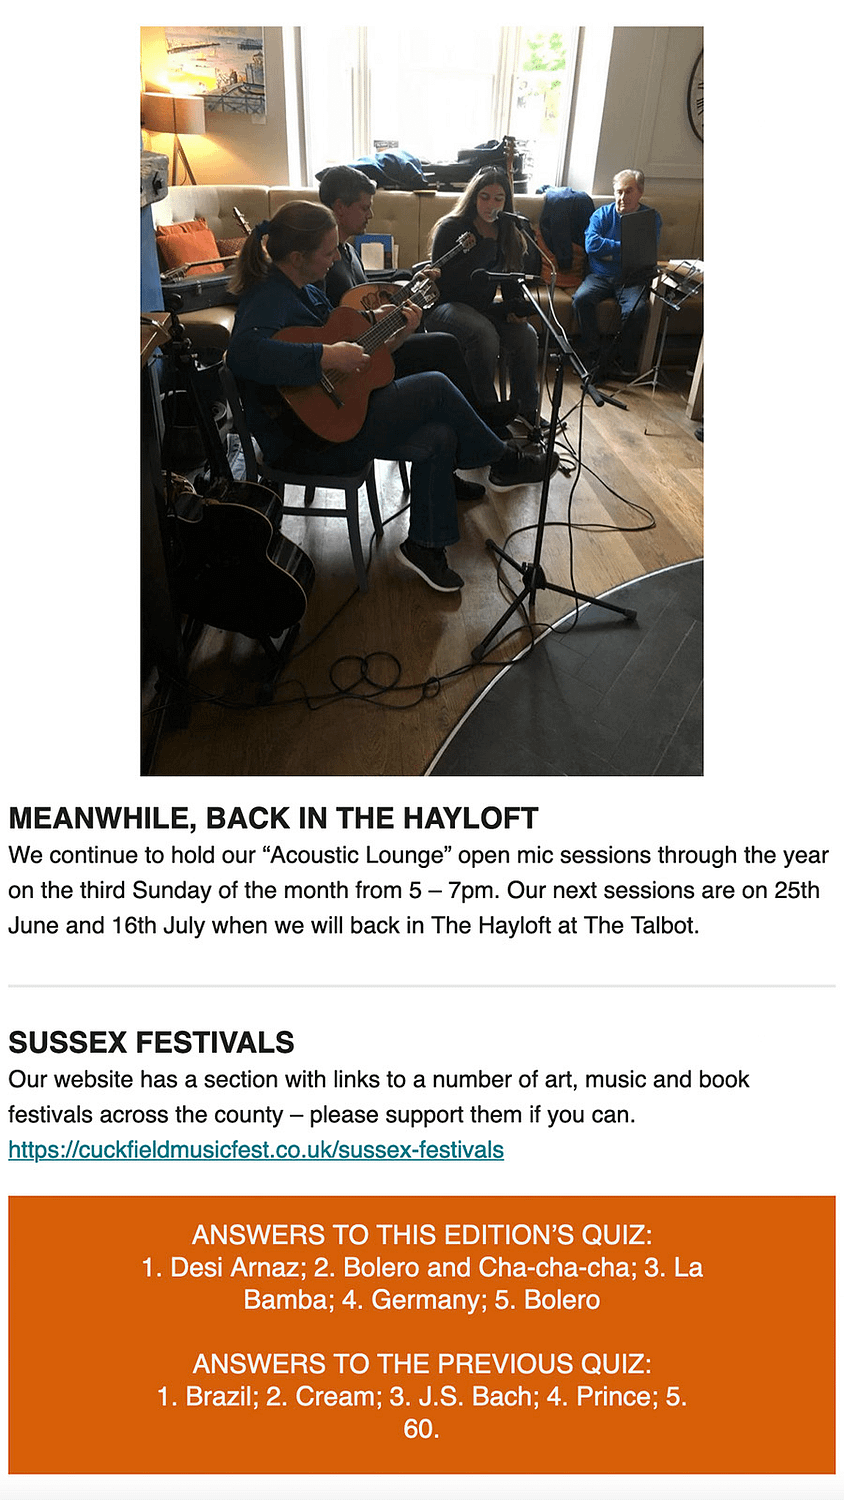 cuckfield music festival